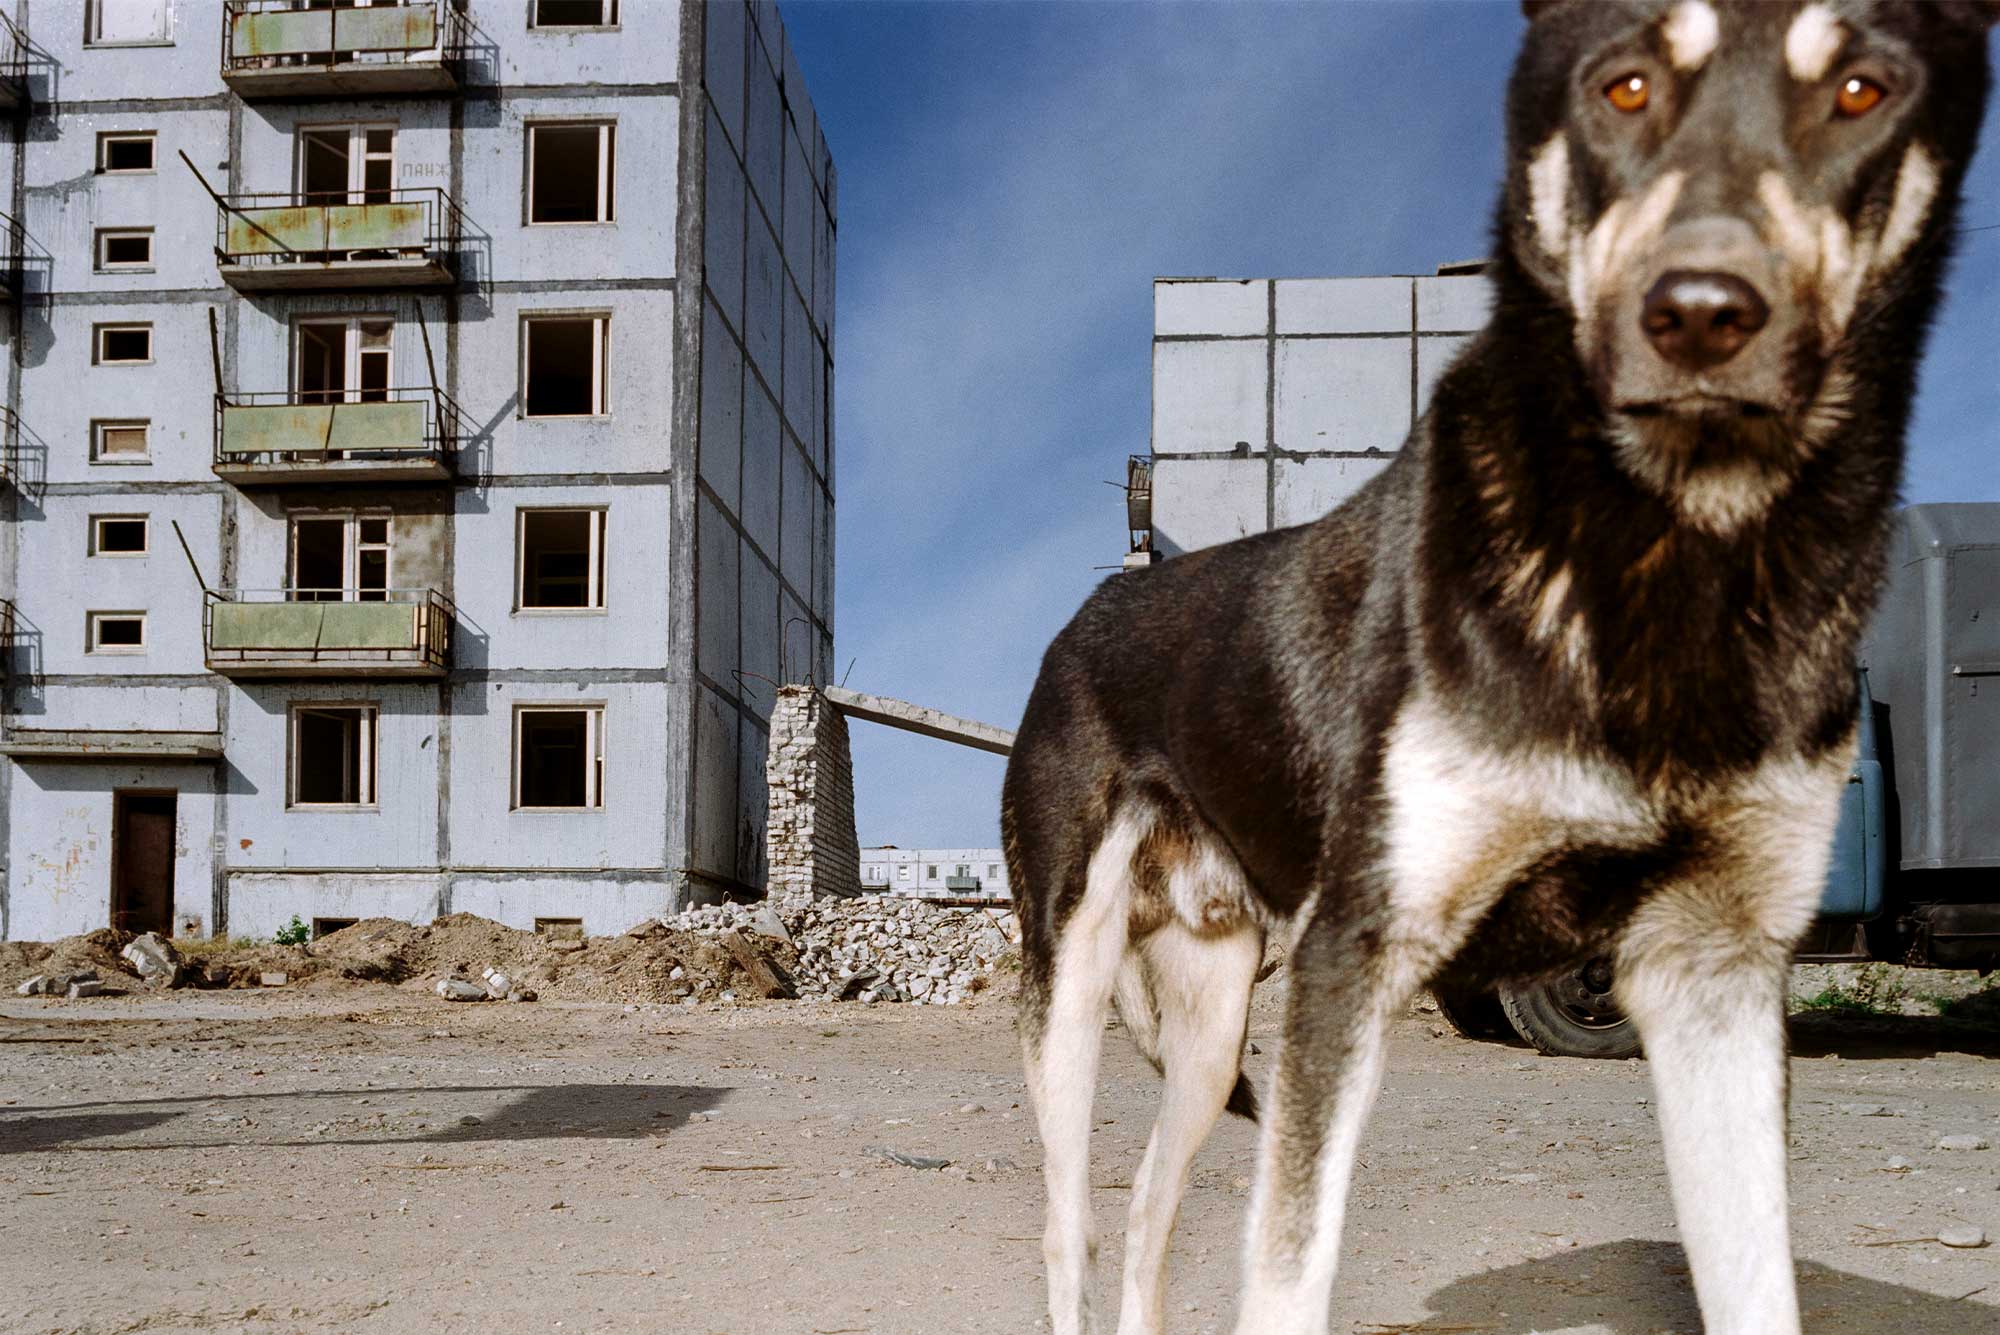 Hund står i framkant mot bakgrund av slitet urbant område.